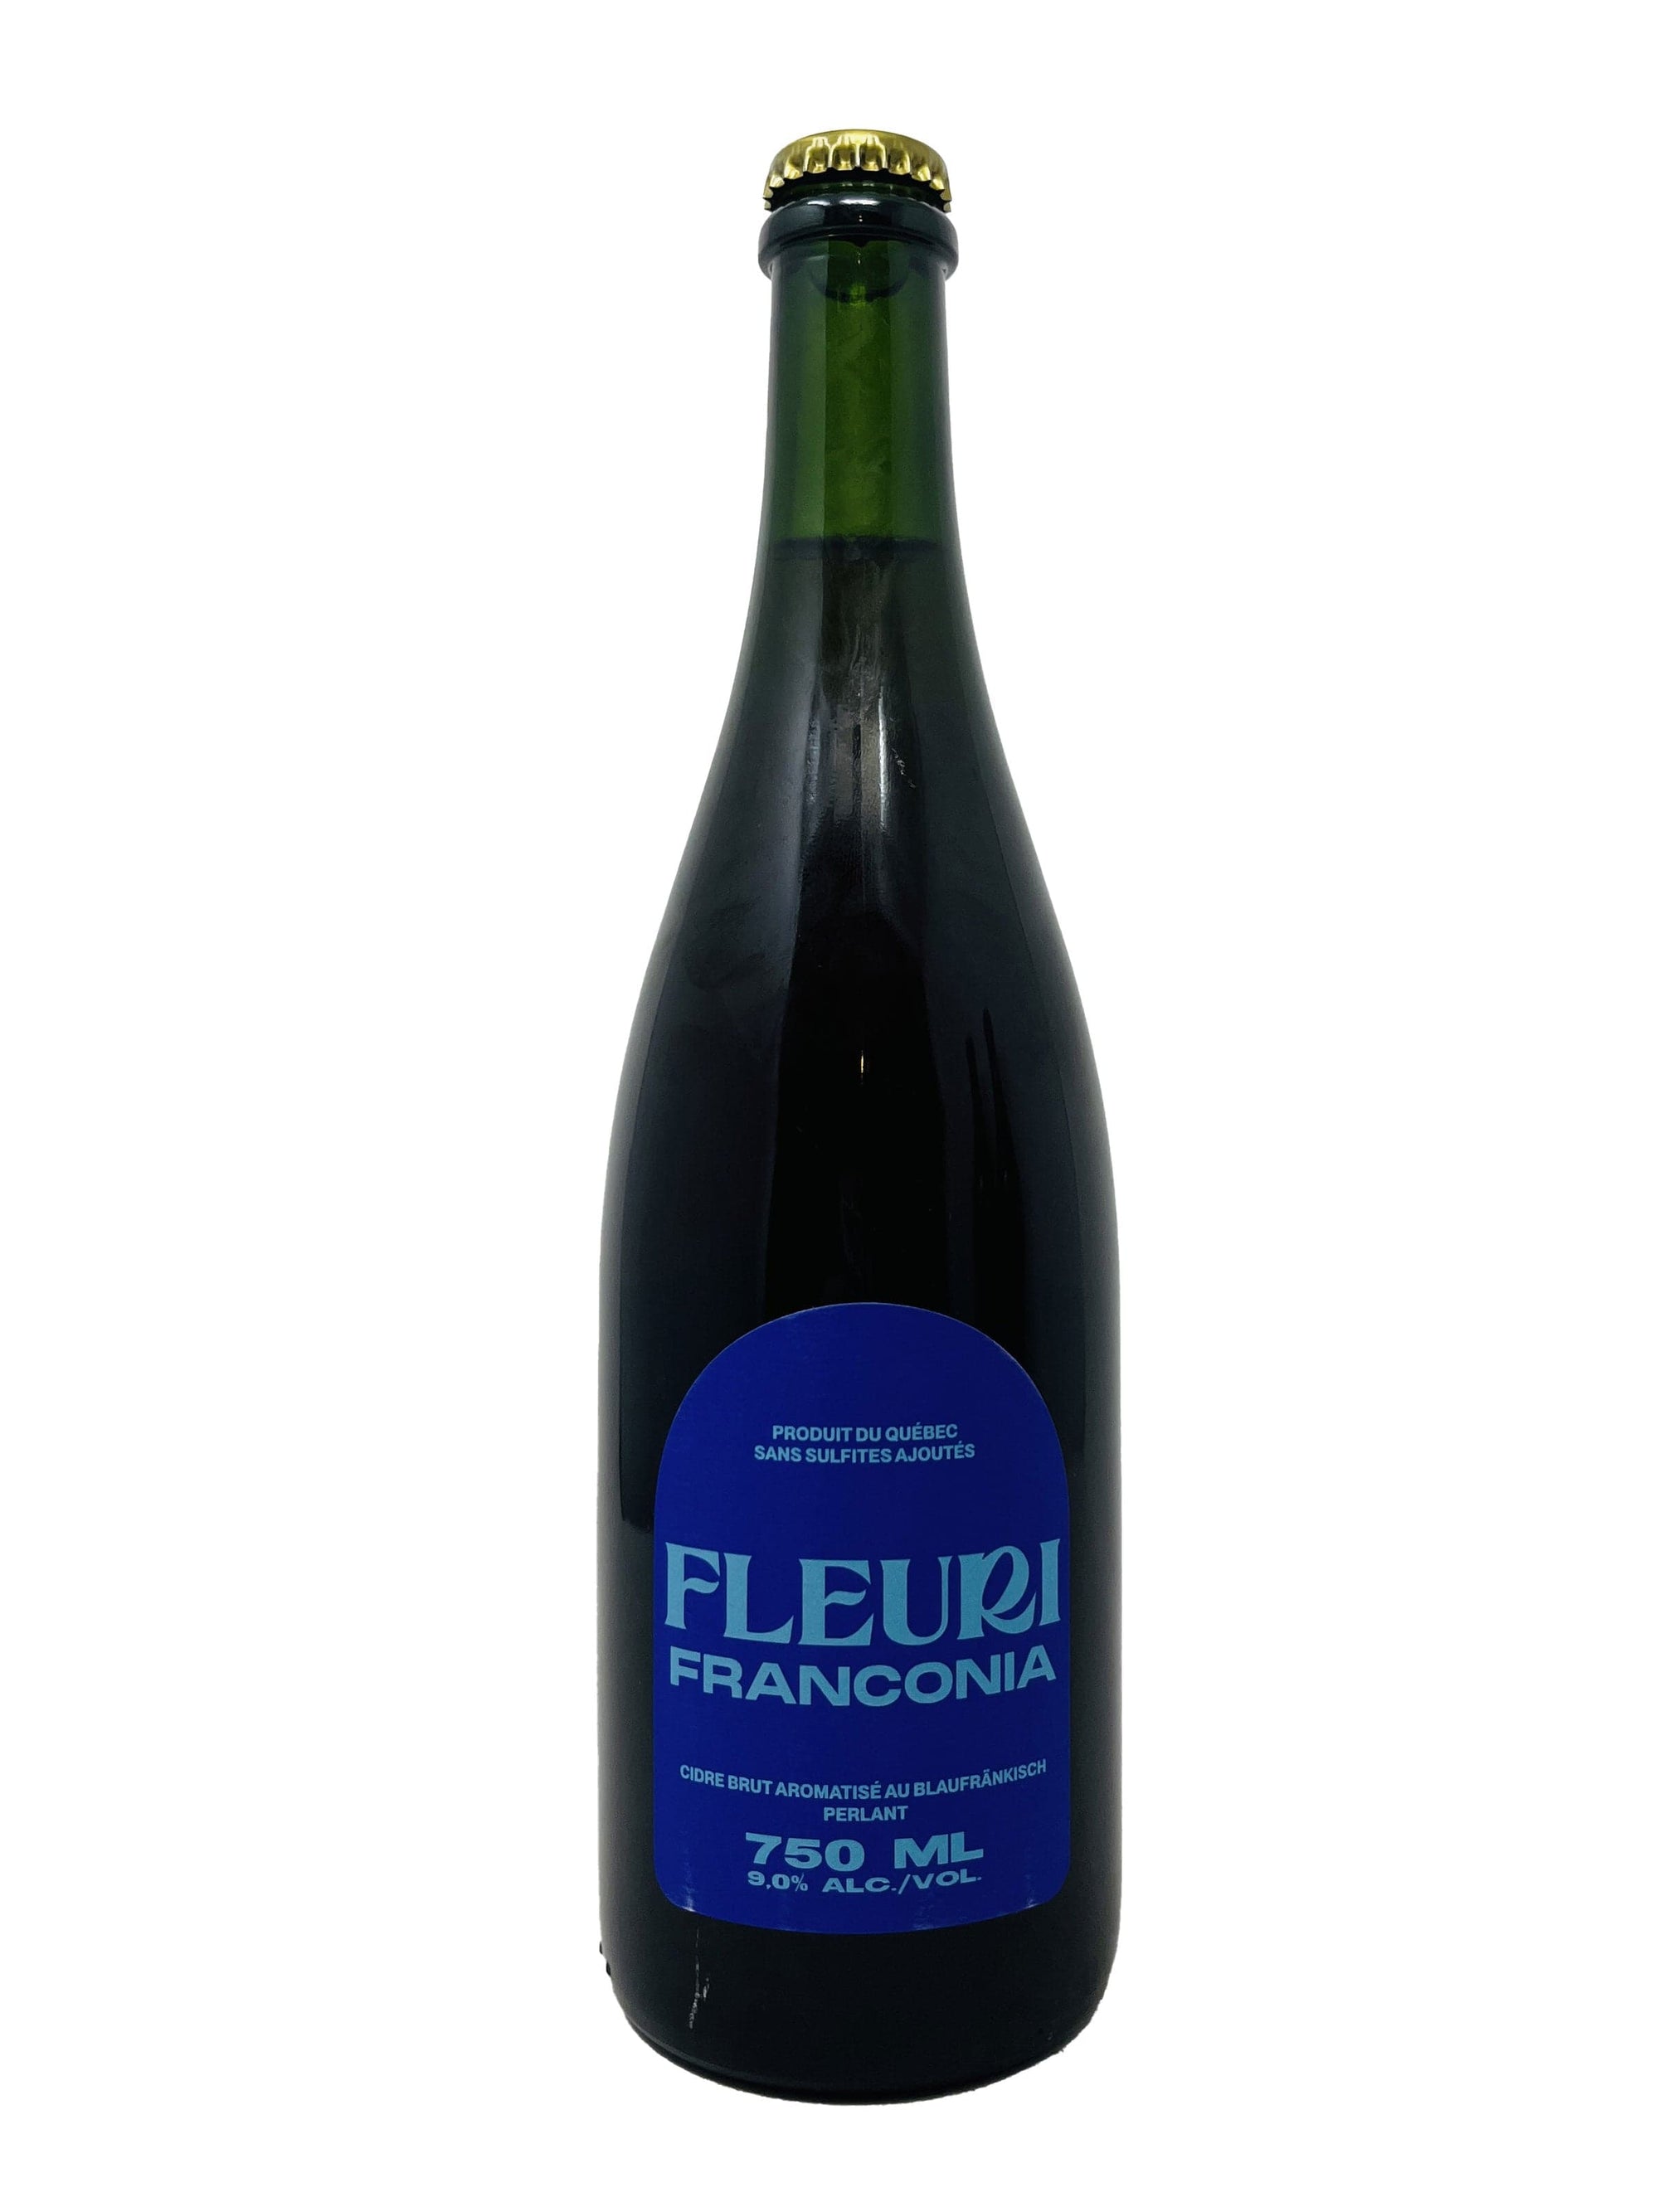 Cidrerie Fleuri Franconia - Cidre brut perlant aromatisé au blaufränkish de chez cidre Fleuri biologique